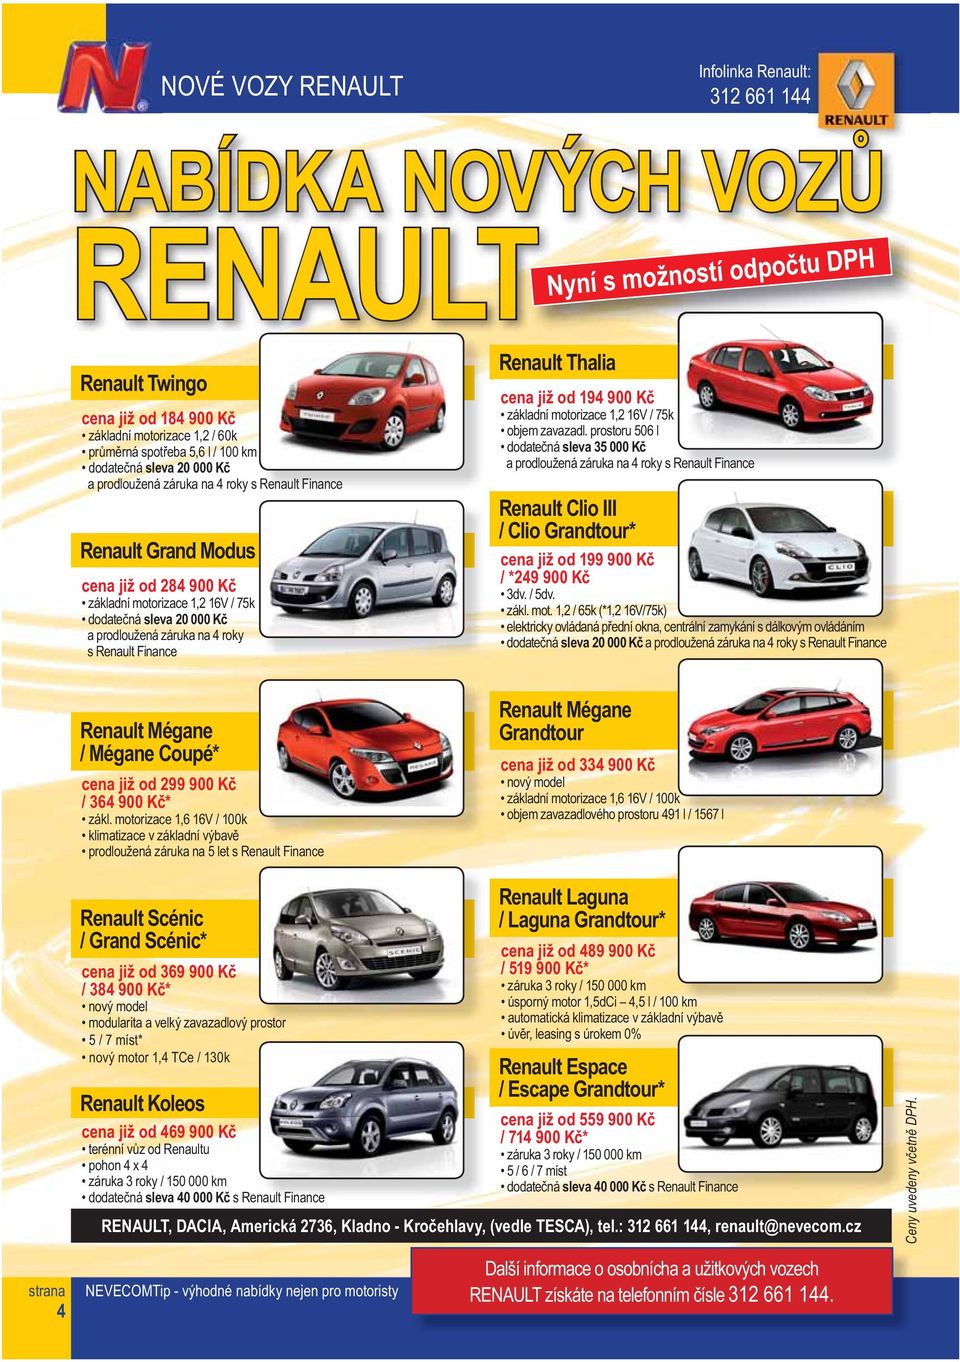 záruka na 4 roky s Renault Finance Renault Mégane / Mégane Coupé* cena již od 299 900 Kč / 364 900 Kč* zákl.